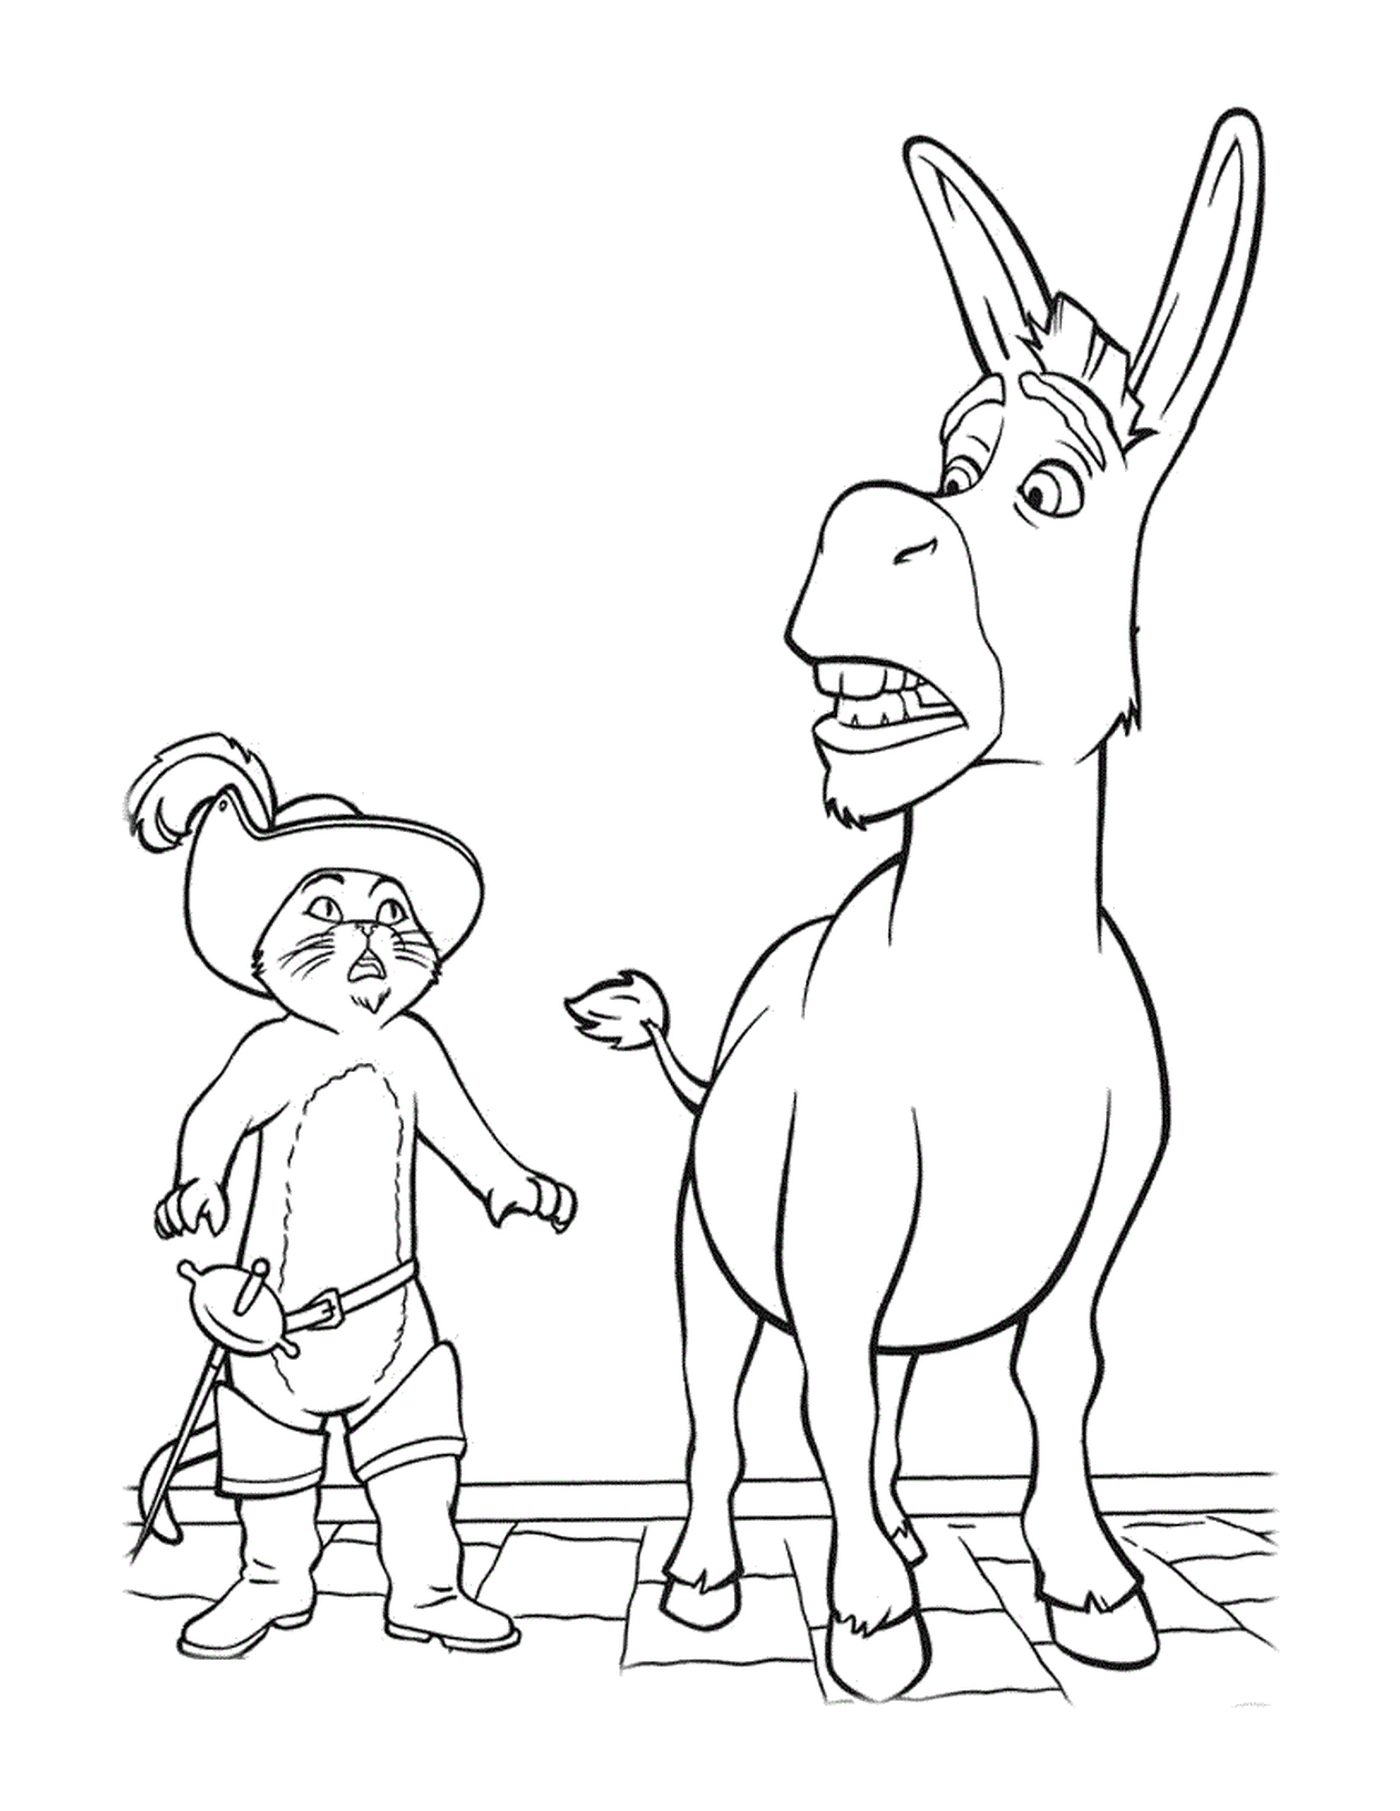  Ein Erwachsener eines Esels und eines Kindes 